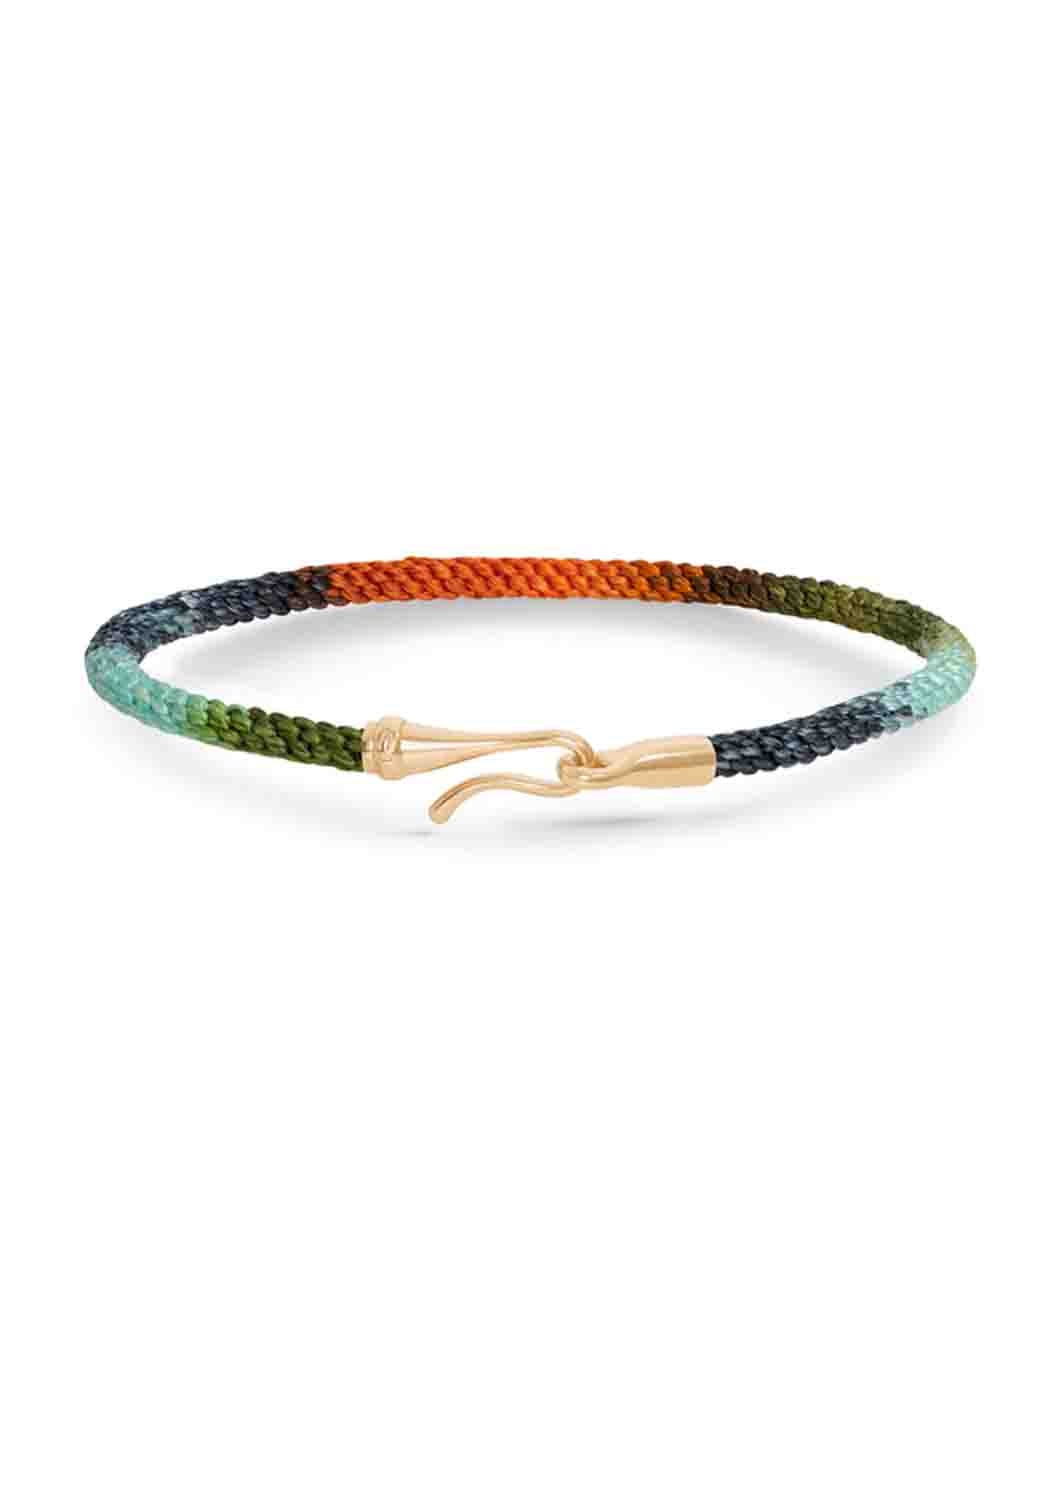 Ole Lynggaard Life 18KYG Tropic Rope Bracelet | Ref. A3040-412
